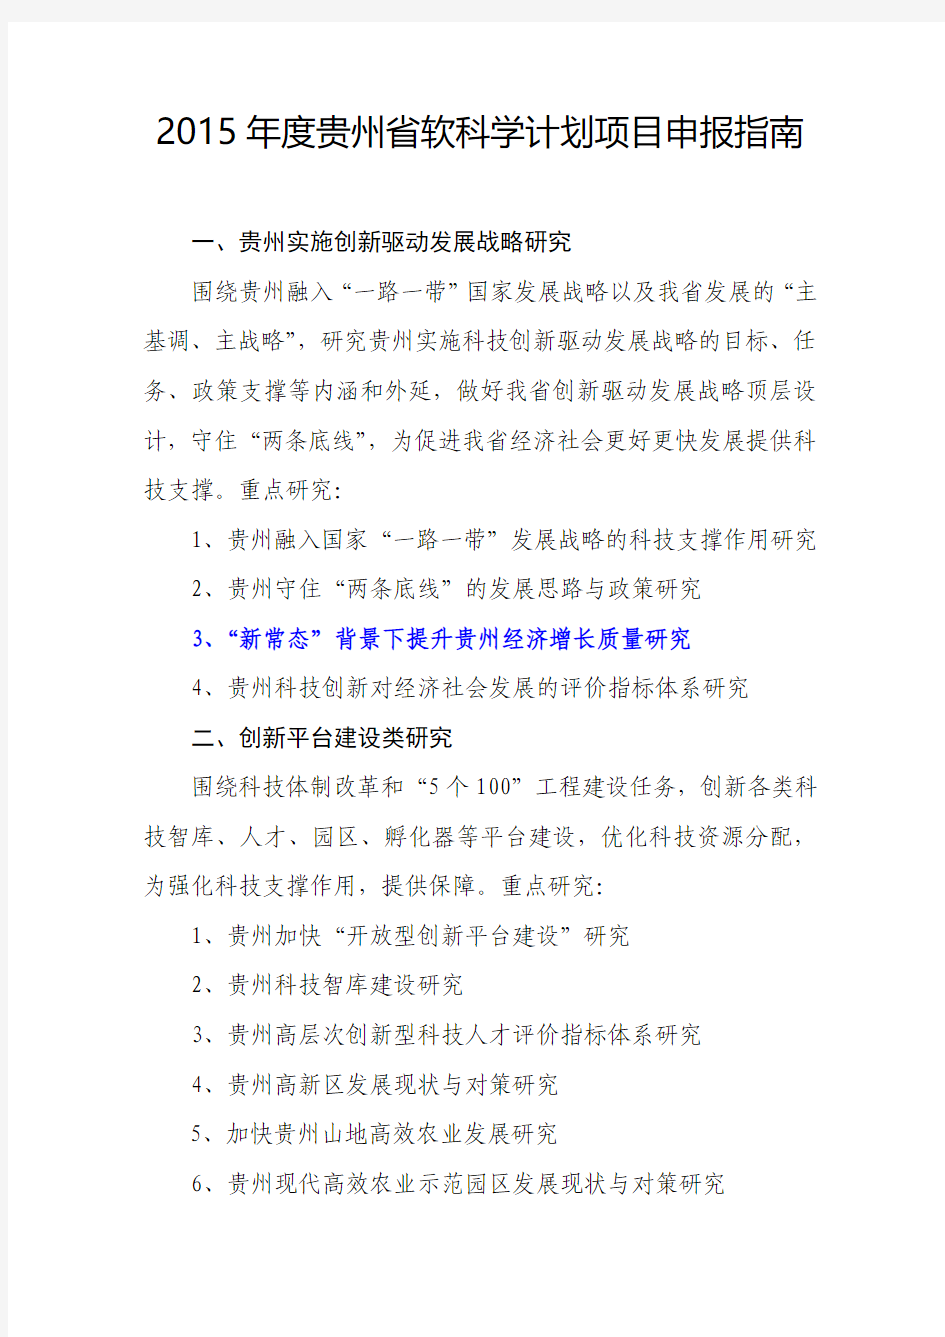 2015年贵州省软科学计划项目申报指南